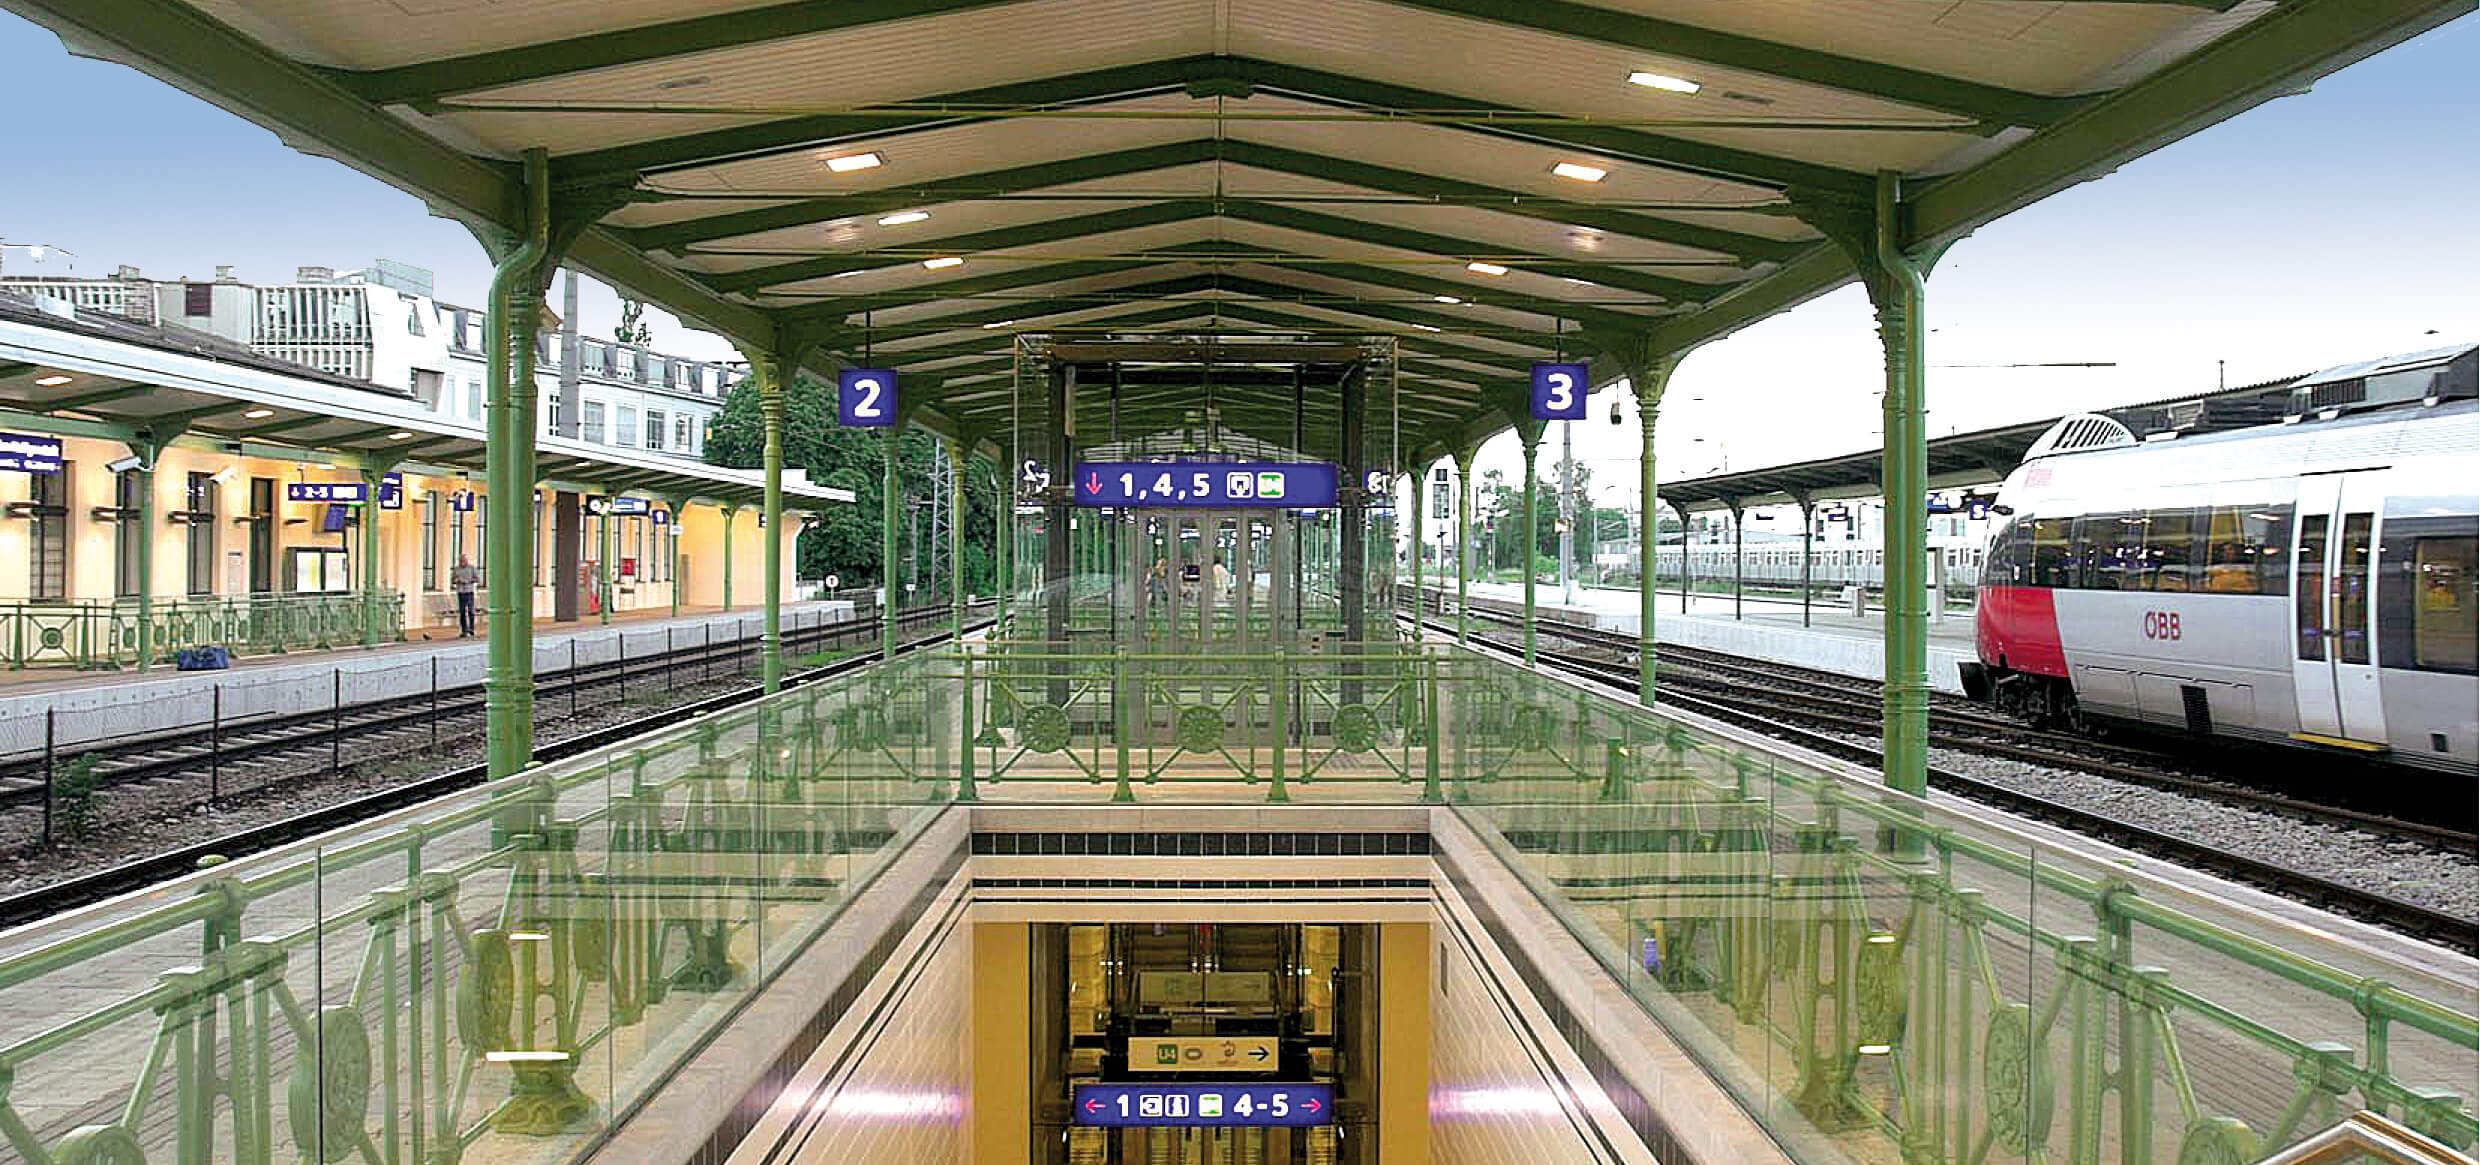 Station Heiligenstadt Vienna